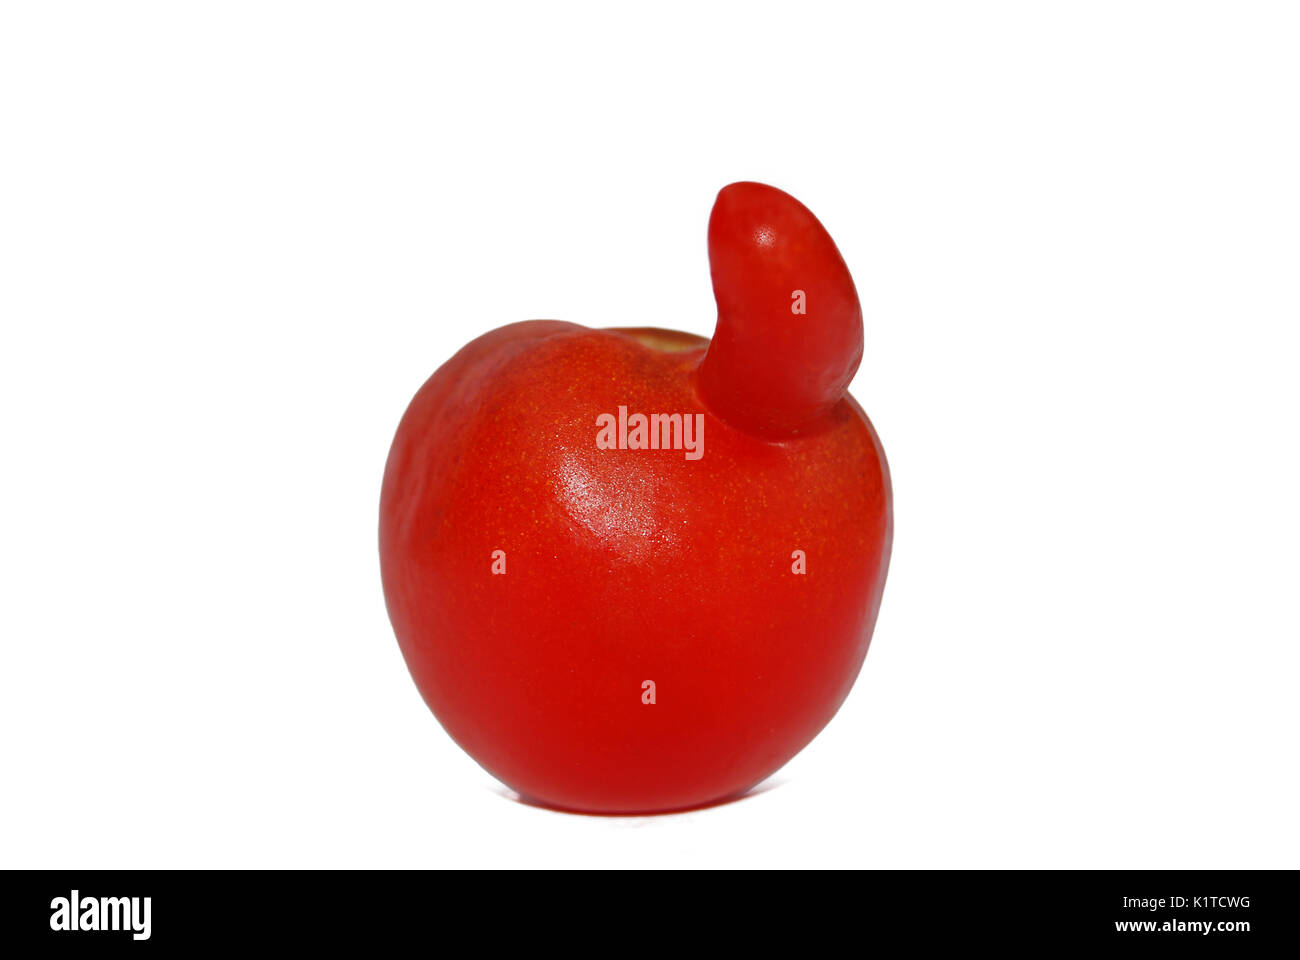 Tomate rouge drôle inhabituelle avec une lance dans la forme d'un bec, isolé sur fond blanc Banque D'Images